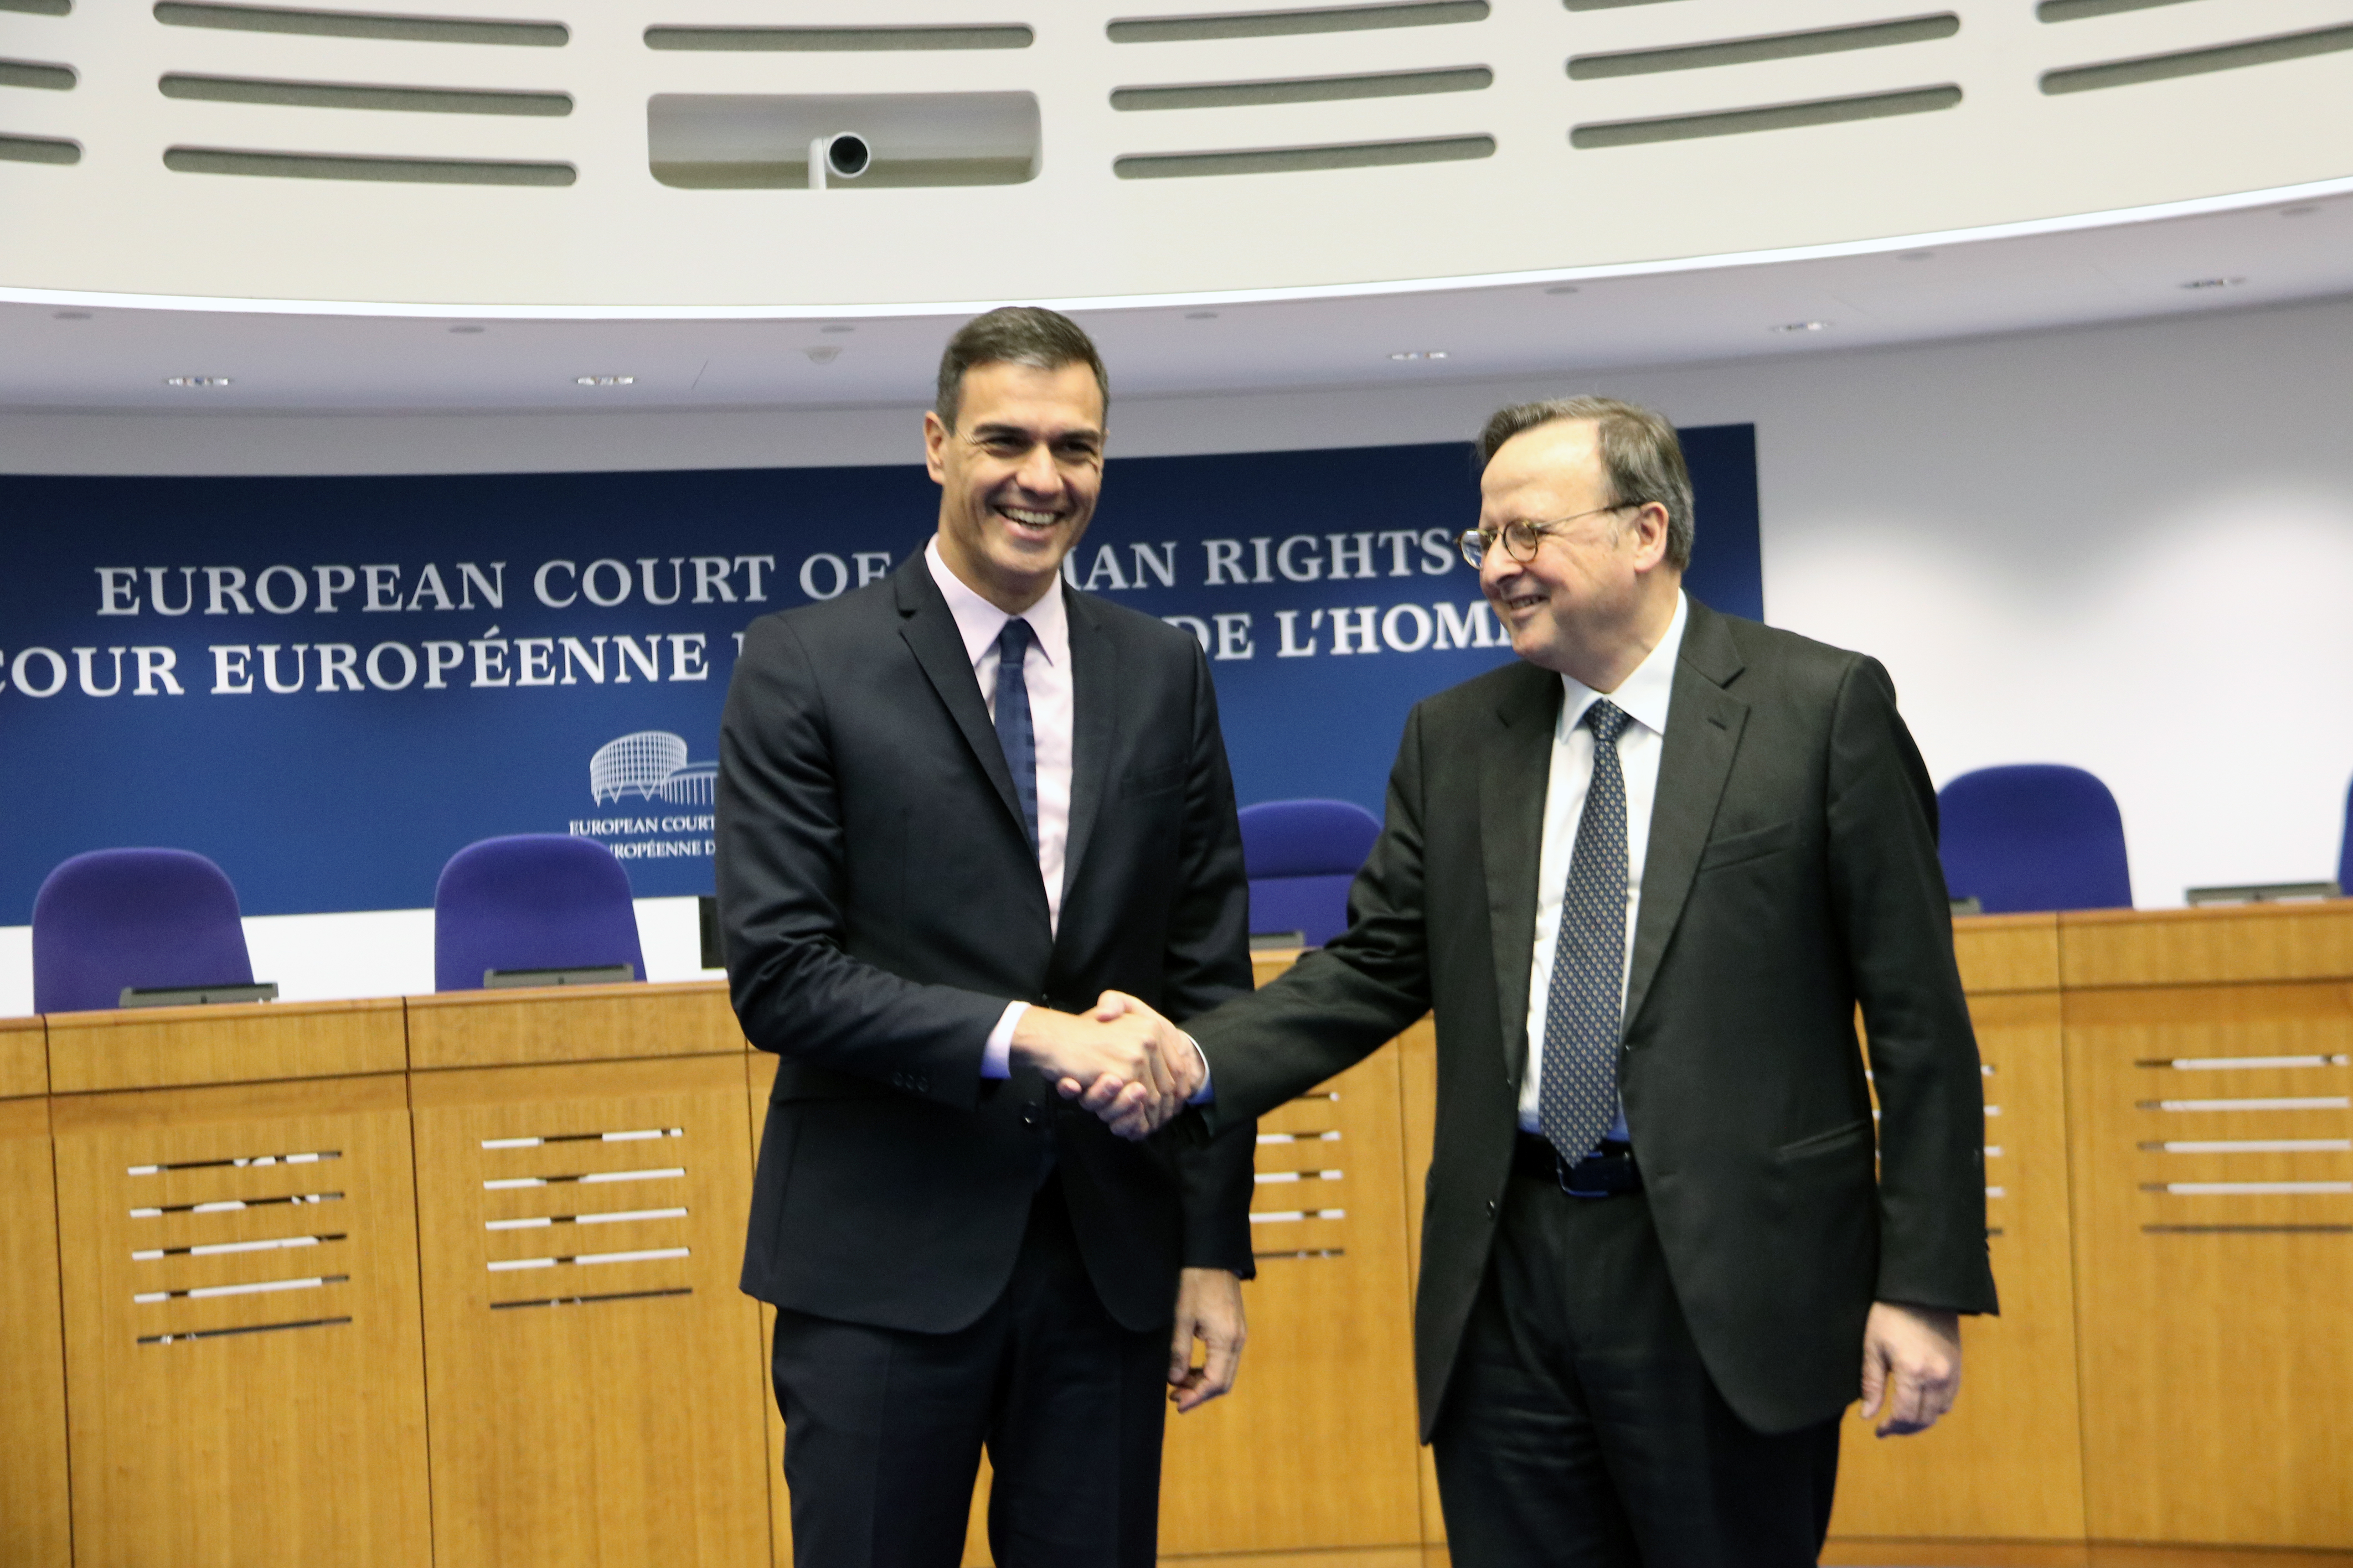 Salutació entre el president espanyol Pedro Sánchez i el president del Tribunal Europeu de Drets Humans Guido Raimondi a Estrasburg el 7 de febrer del 2019. Fotografia: ACN.